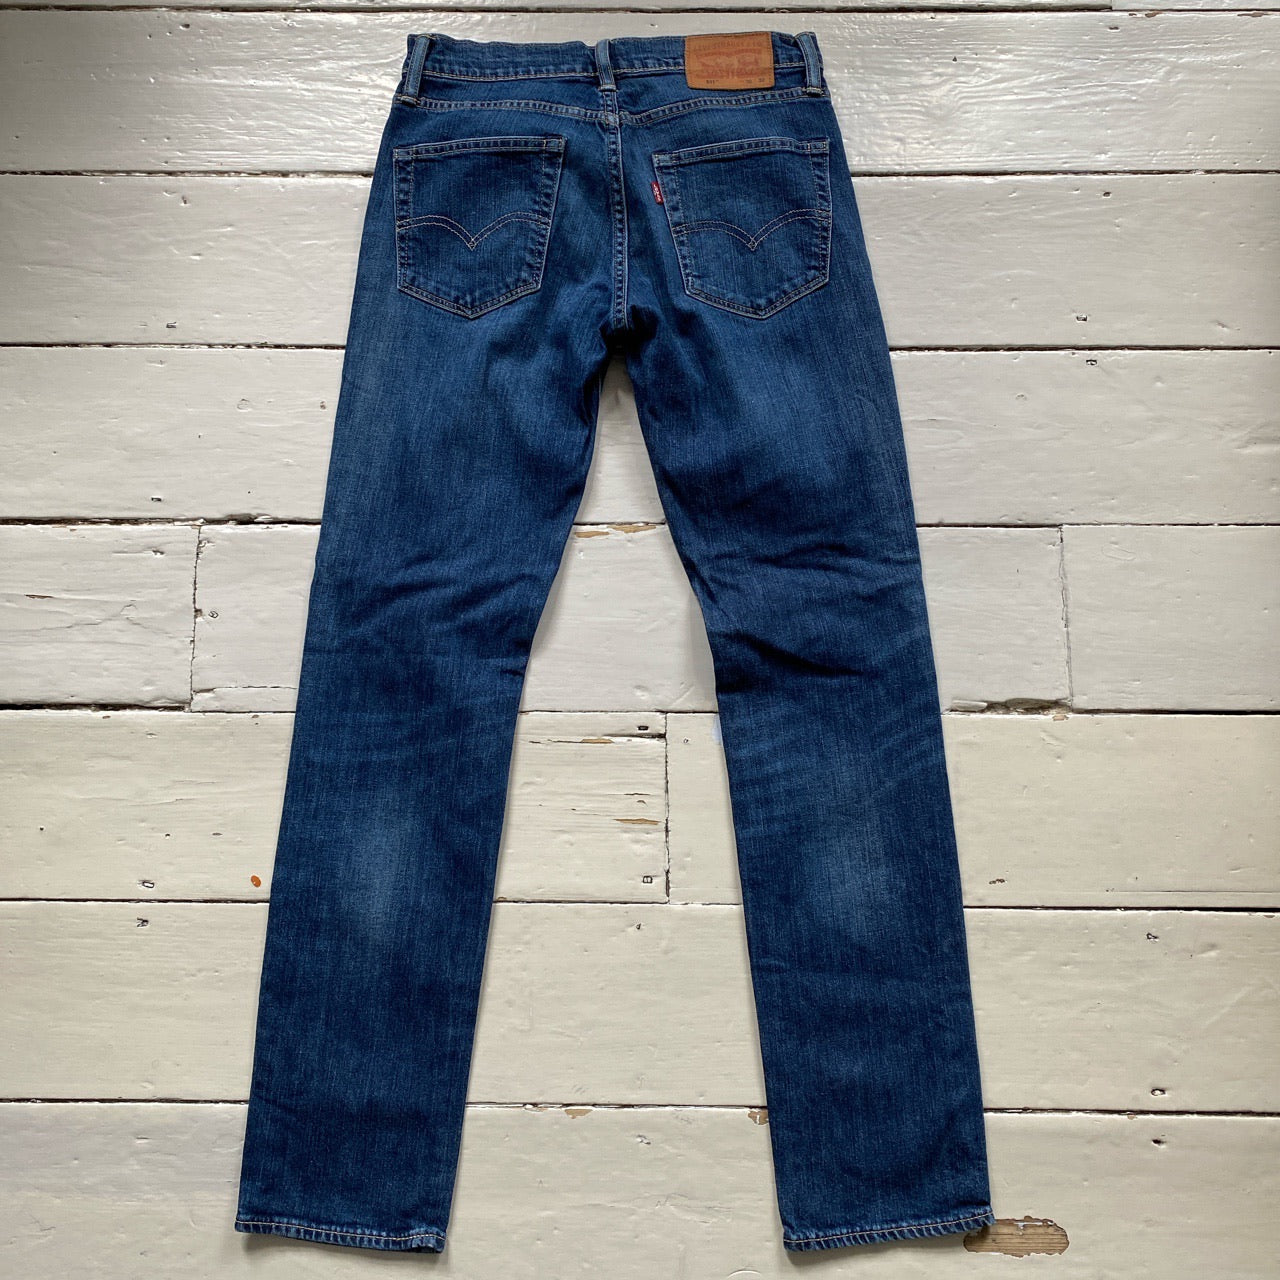 Levis 511 Blue Jeans (30/32)